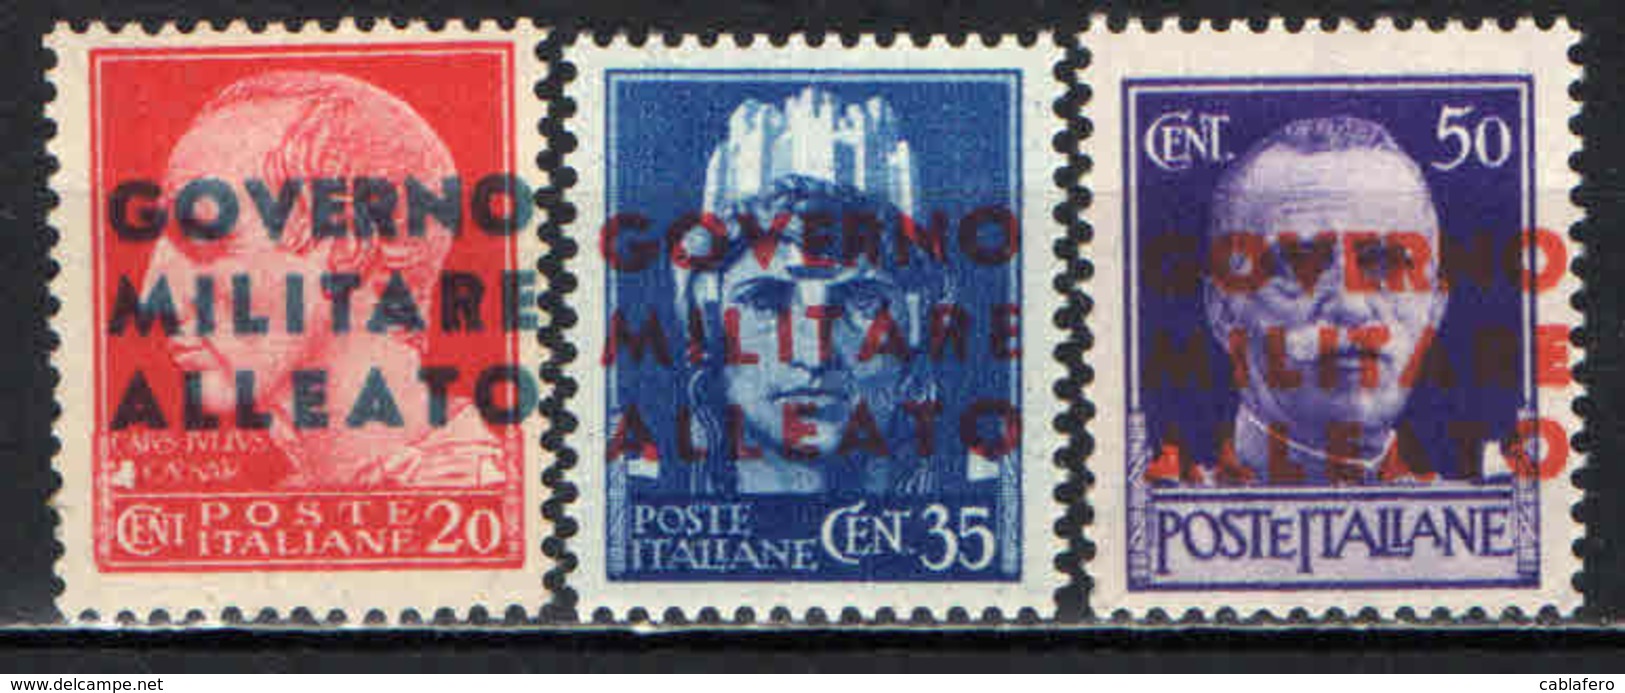 ITALIA - OCCUPAZIONE ANGLO-AMERICANA - 1943 - NAPOLI - MNH - Ocu. Anglo-Americana: Napoles